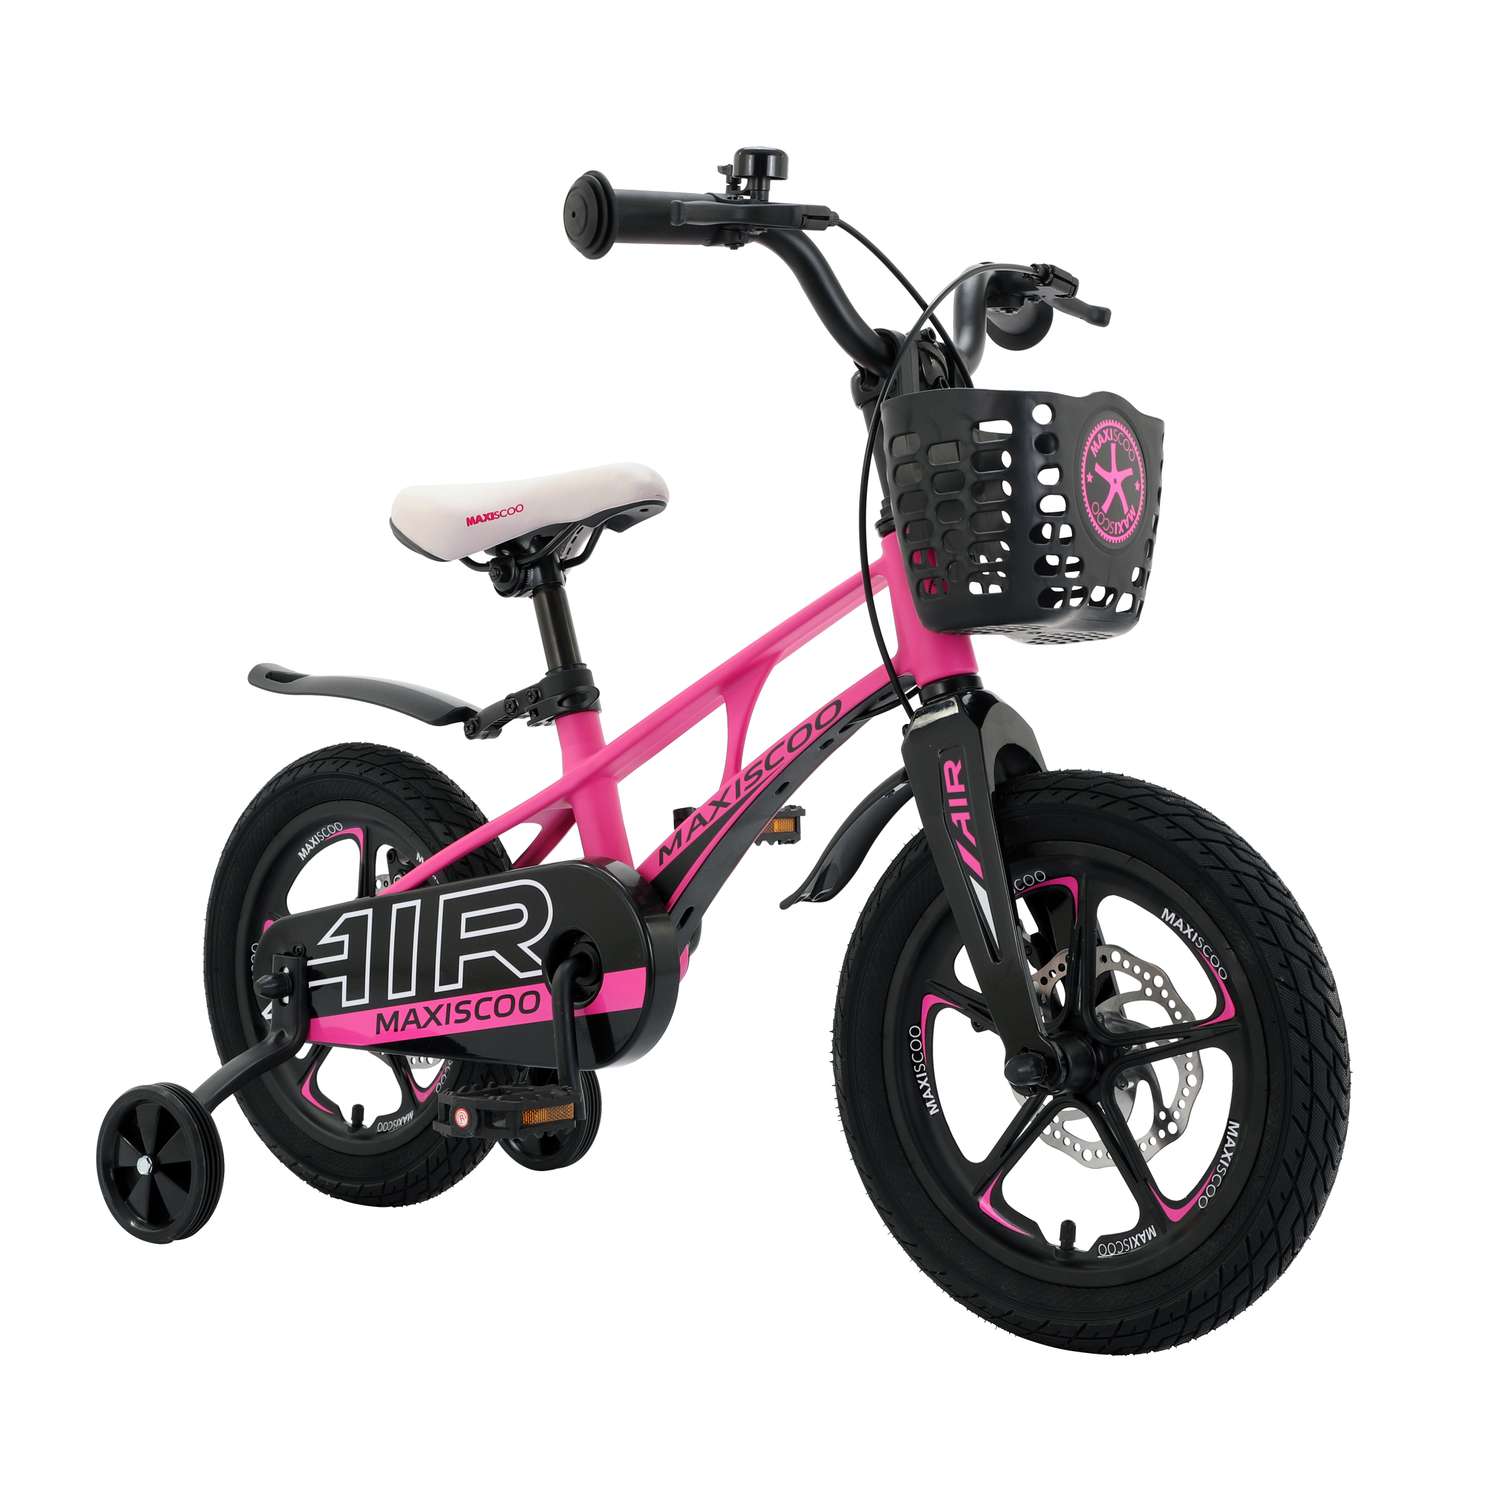 Детский двухколесный велосипед Maxiscoo Air делюкс плюс 14 розовый матовый - фото 2